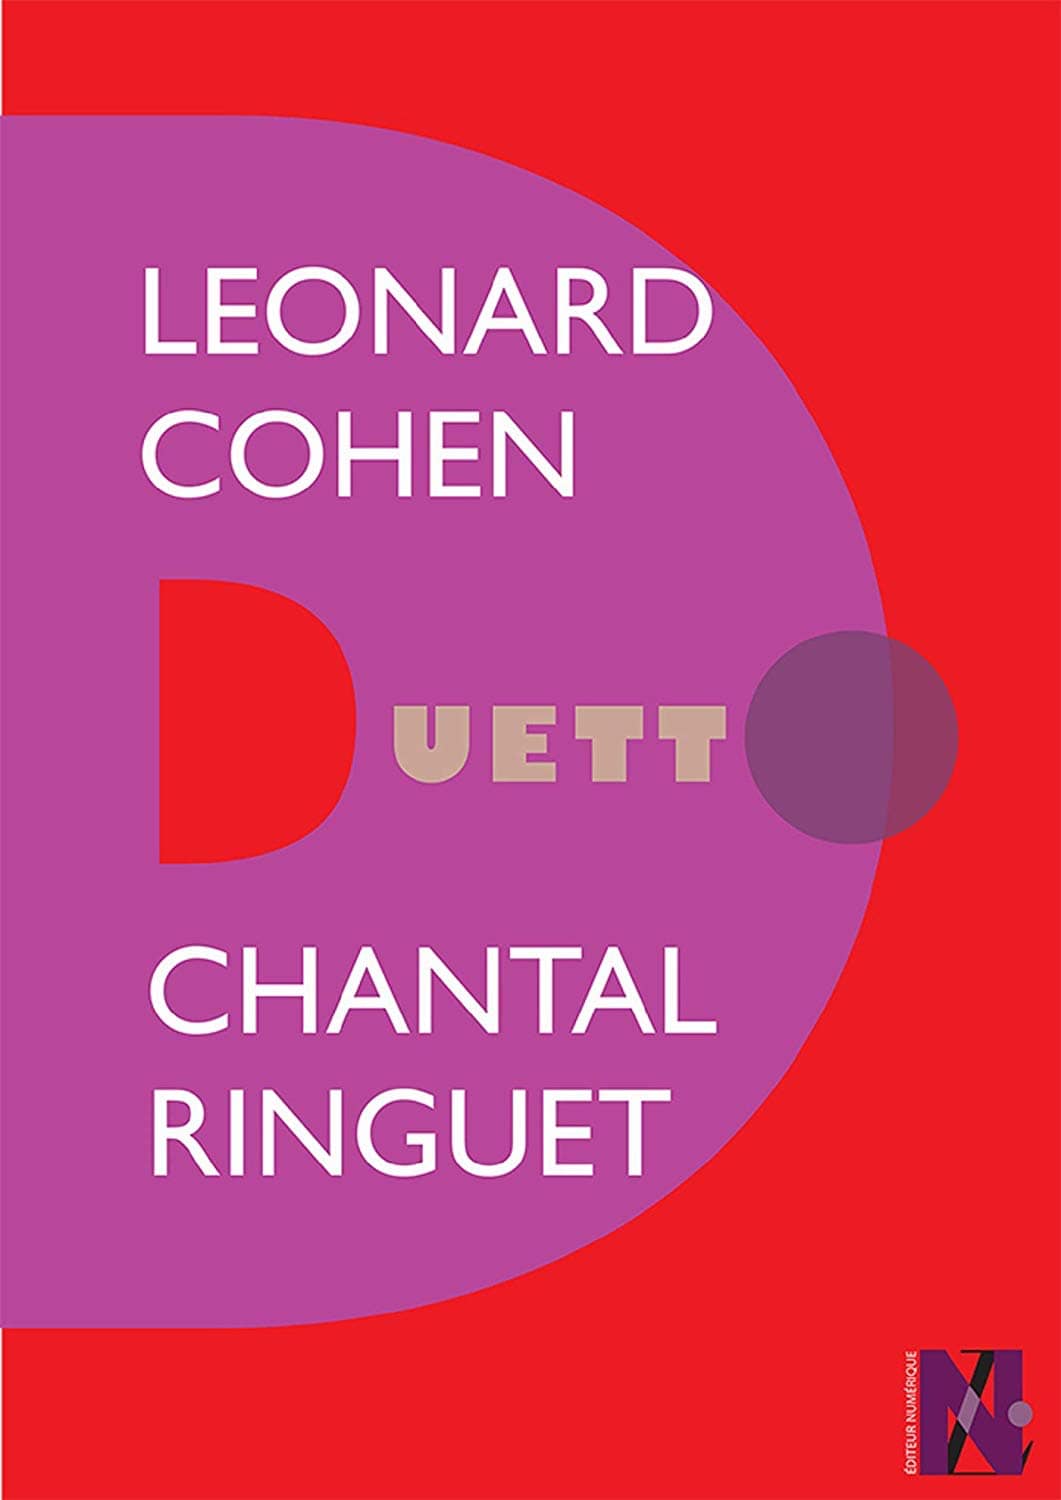 Couverture de « Leonard Cohen - Duetto»